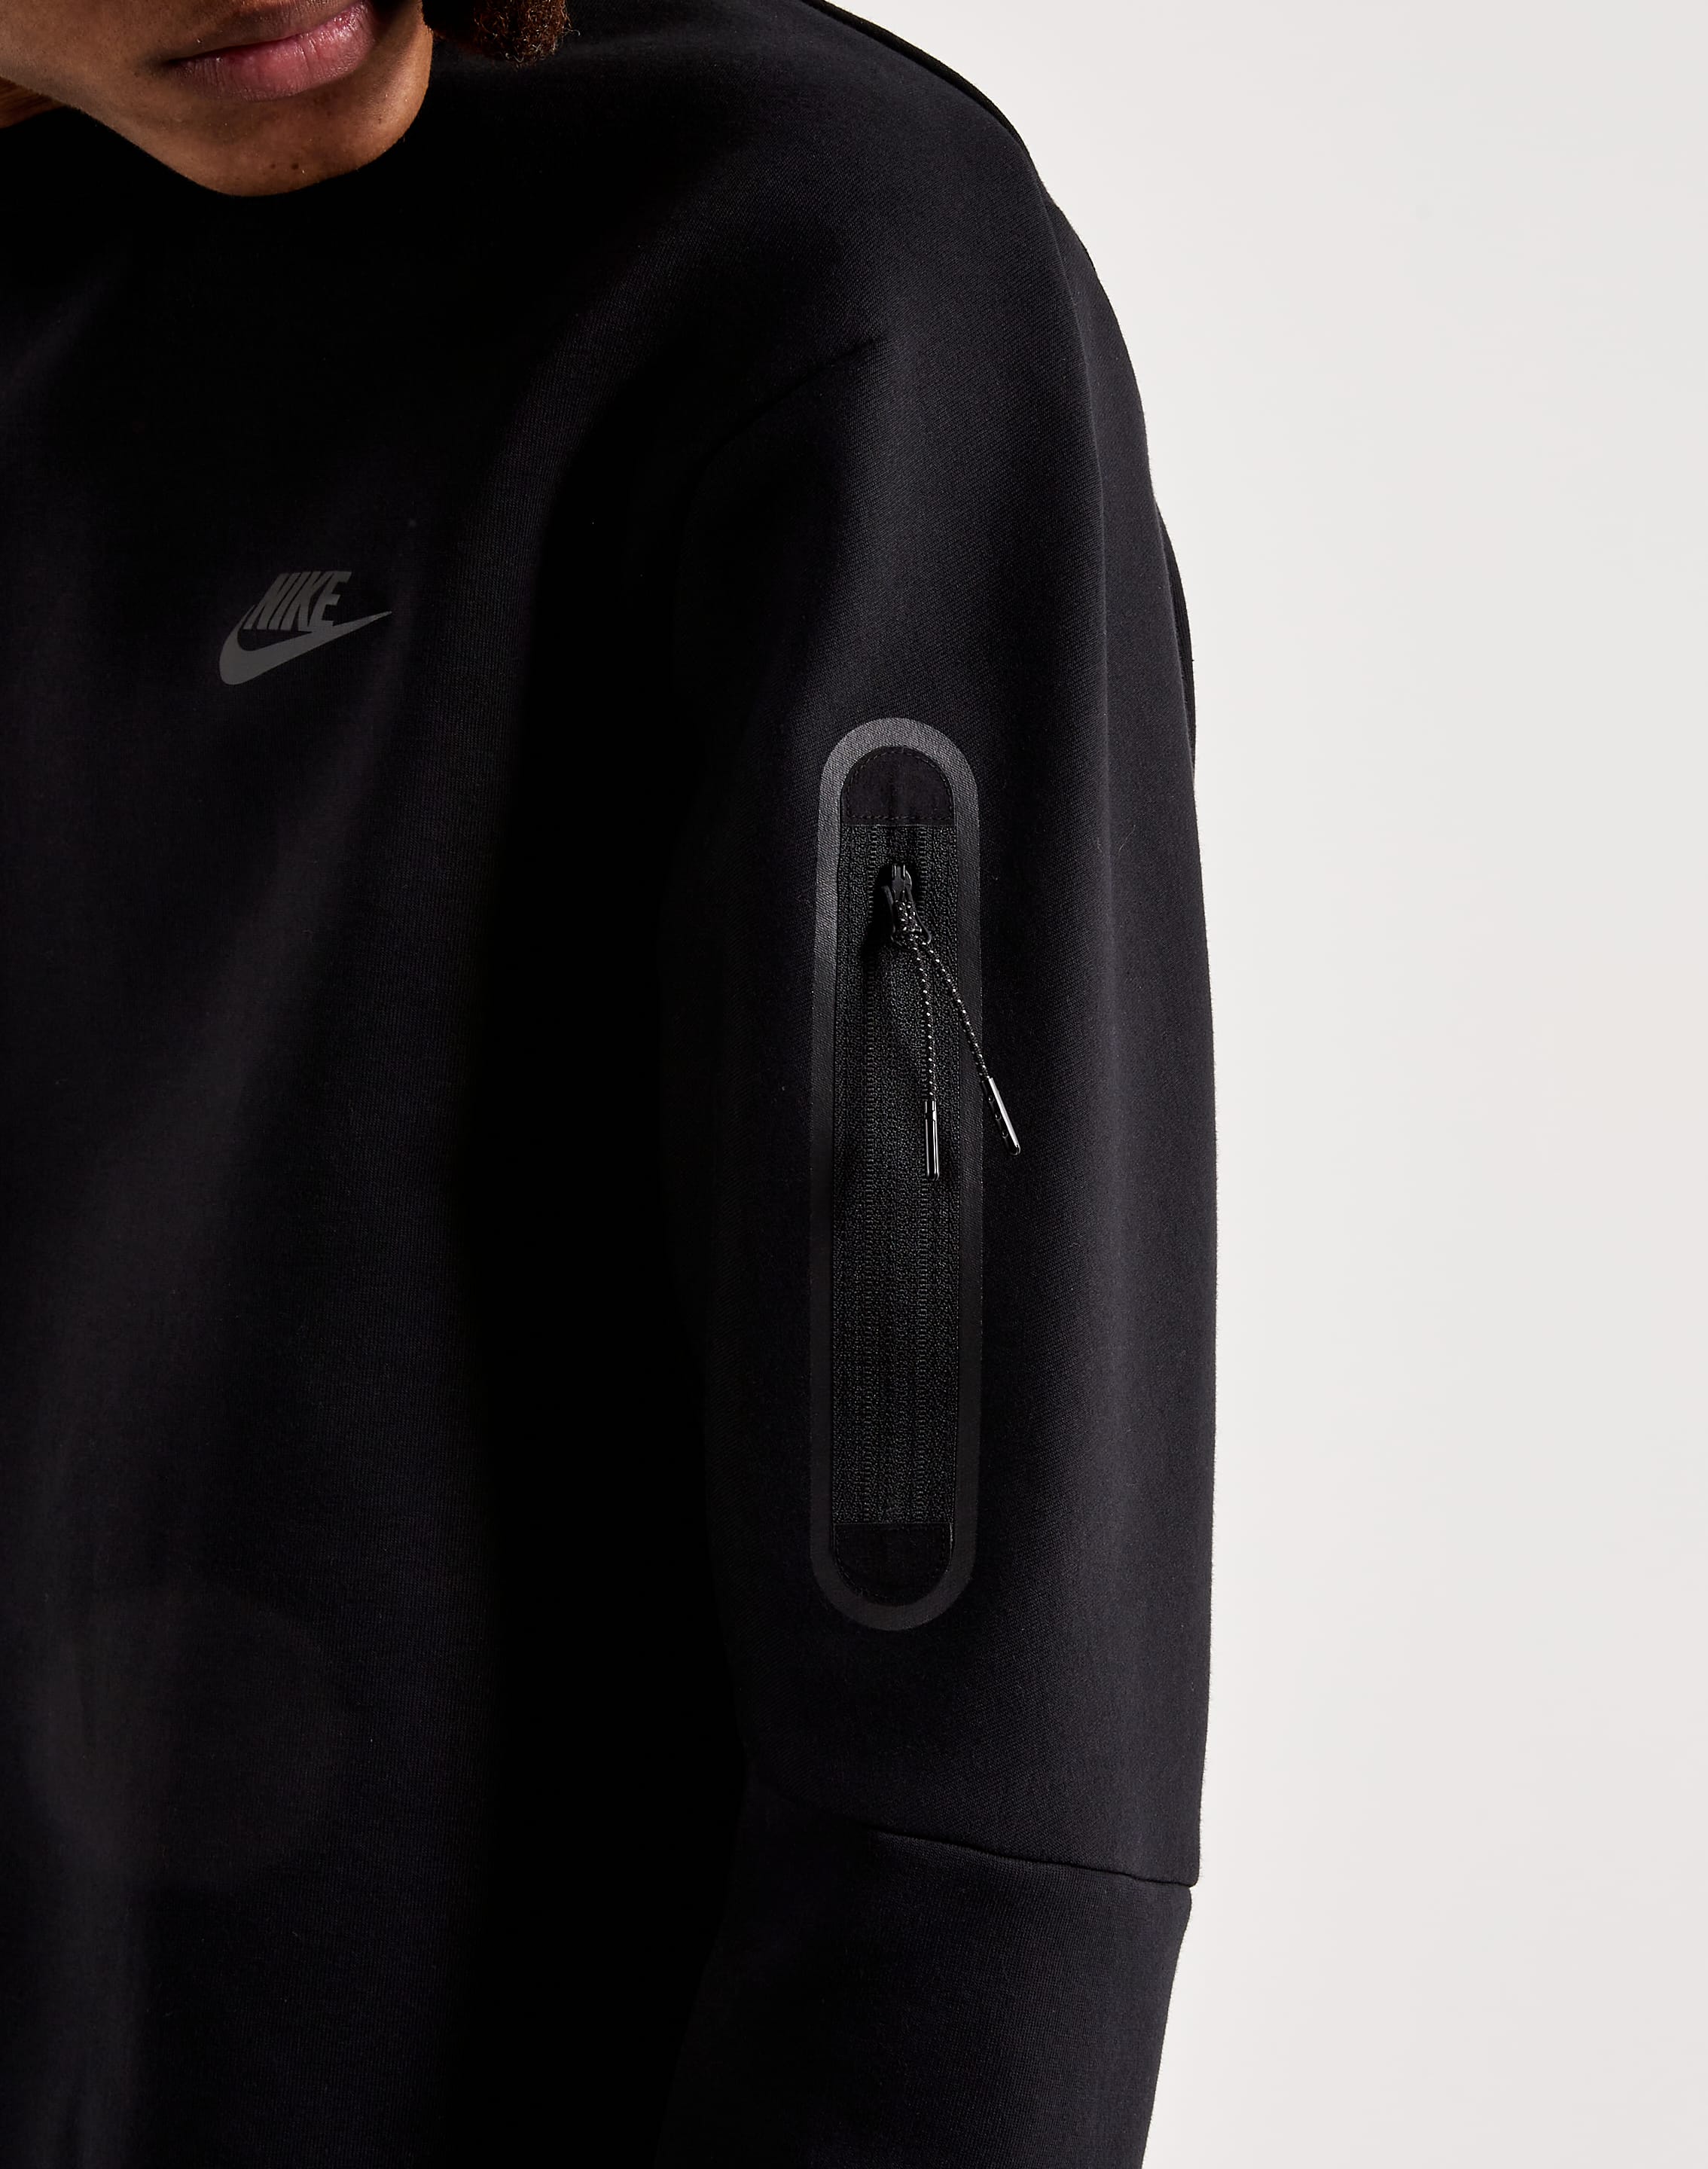 Woord behalve voor Boodschapper Nike Tech Fleece Crewneck Sweatshirt – DTLR